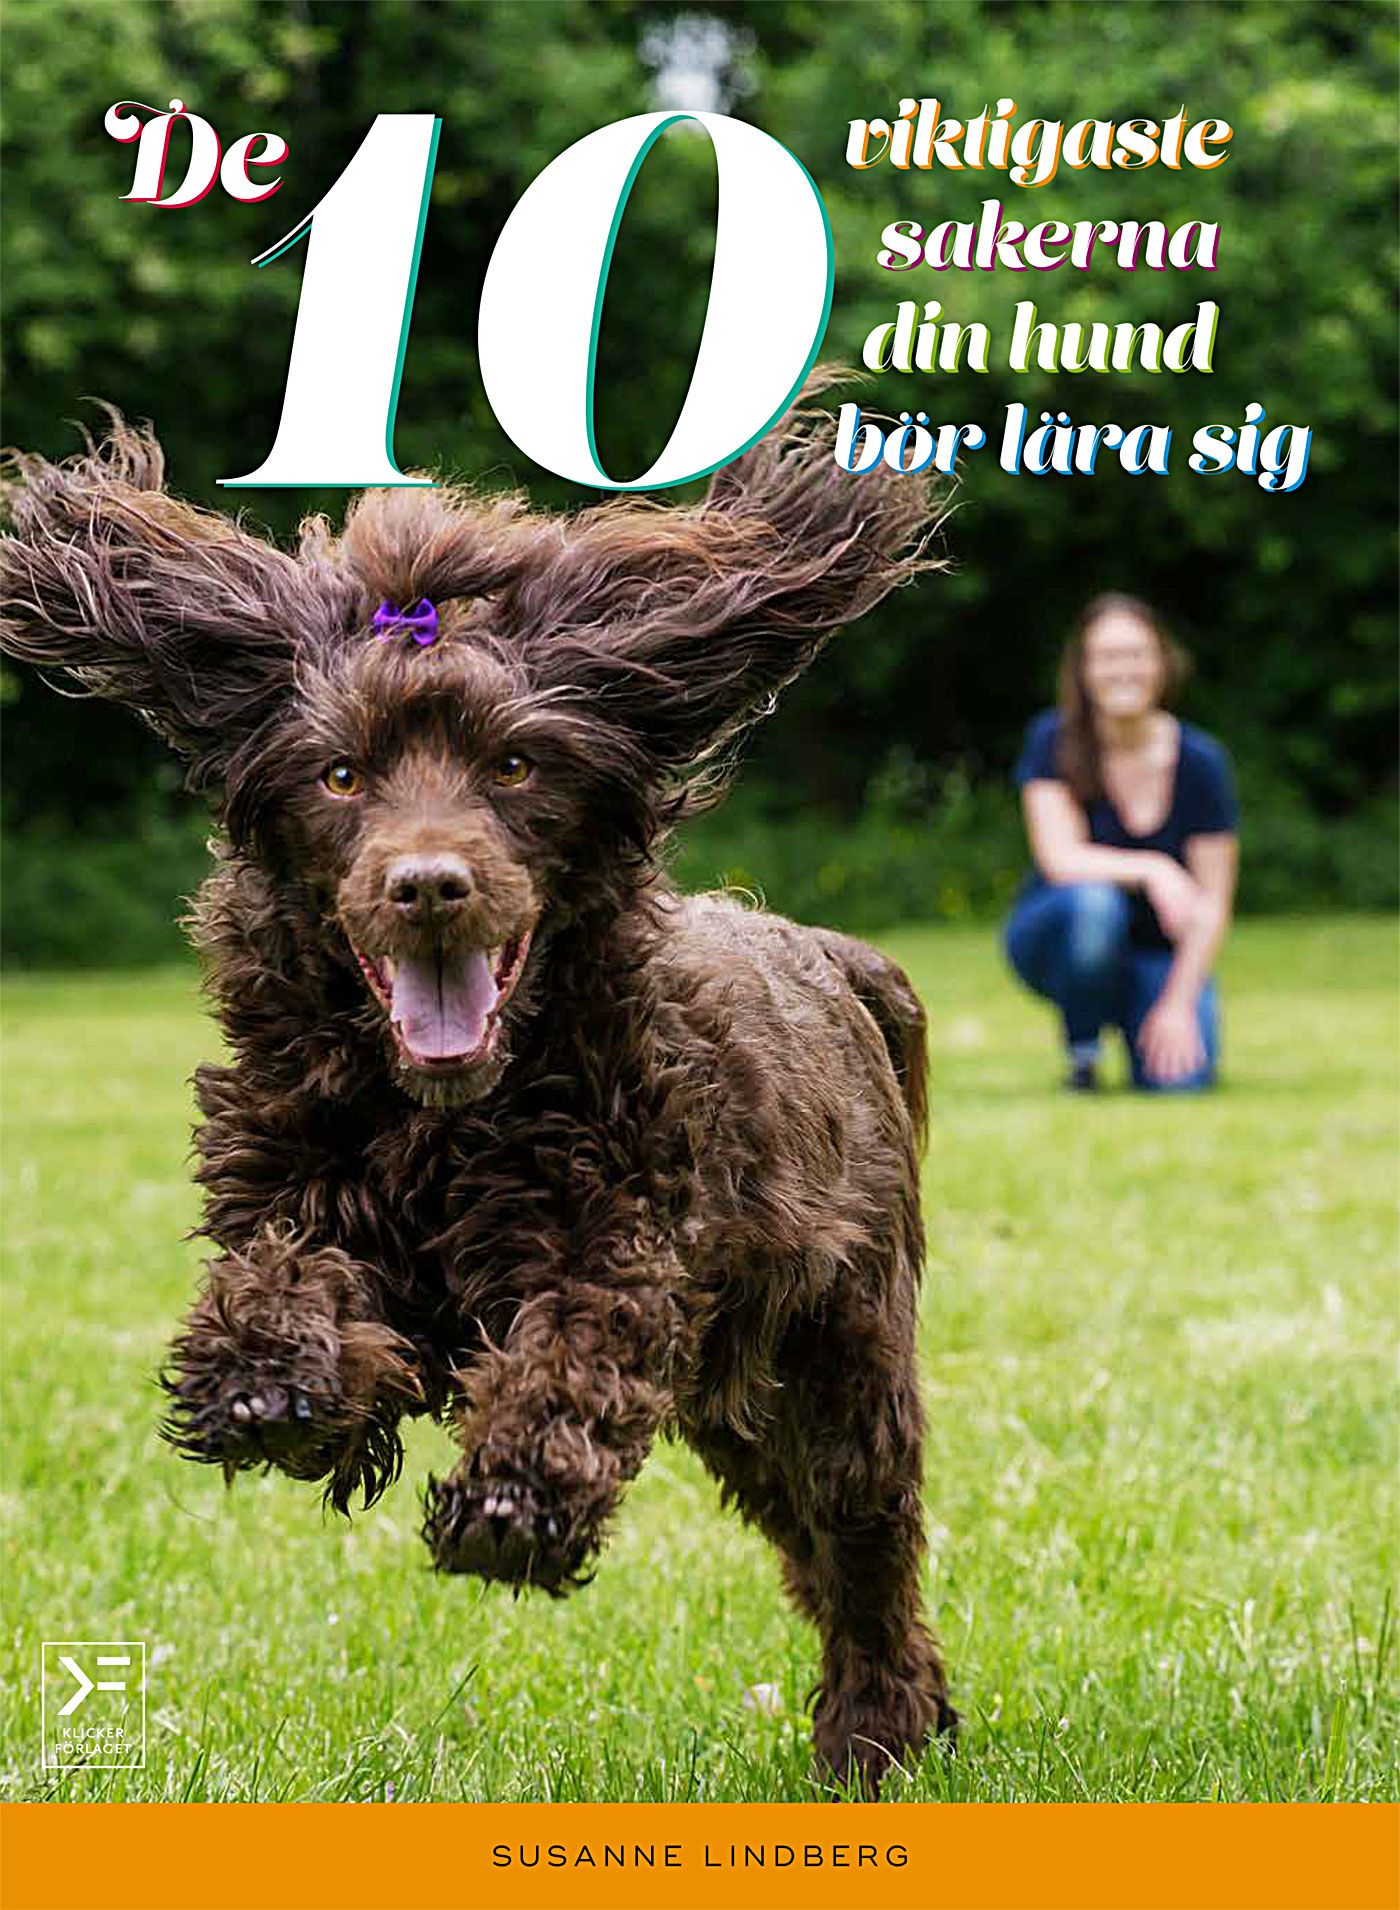 De 10 viktigaste sakerna din hund bör lära sig, eBook by Susanne Lindberg